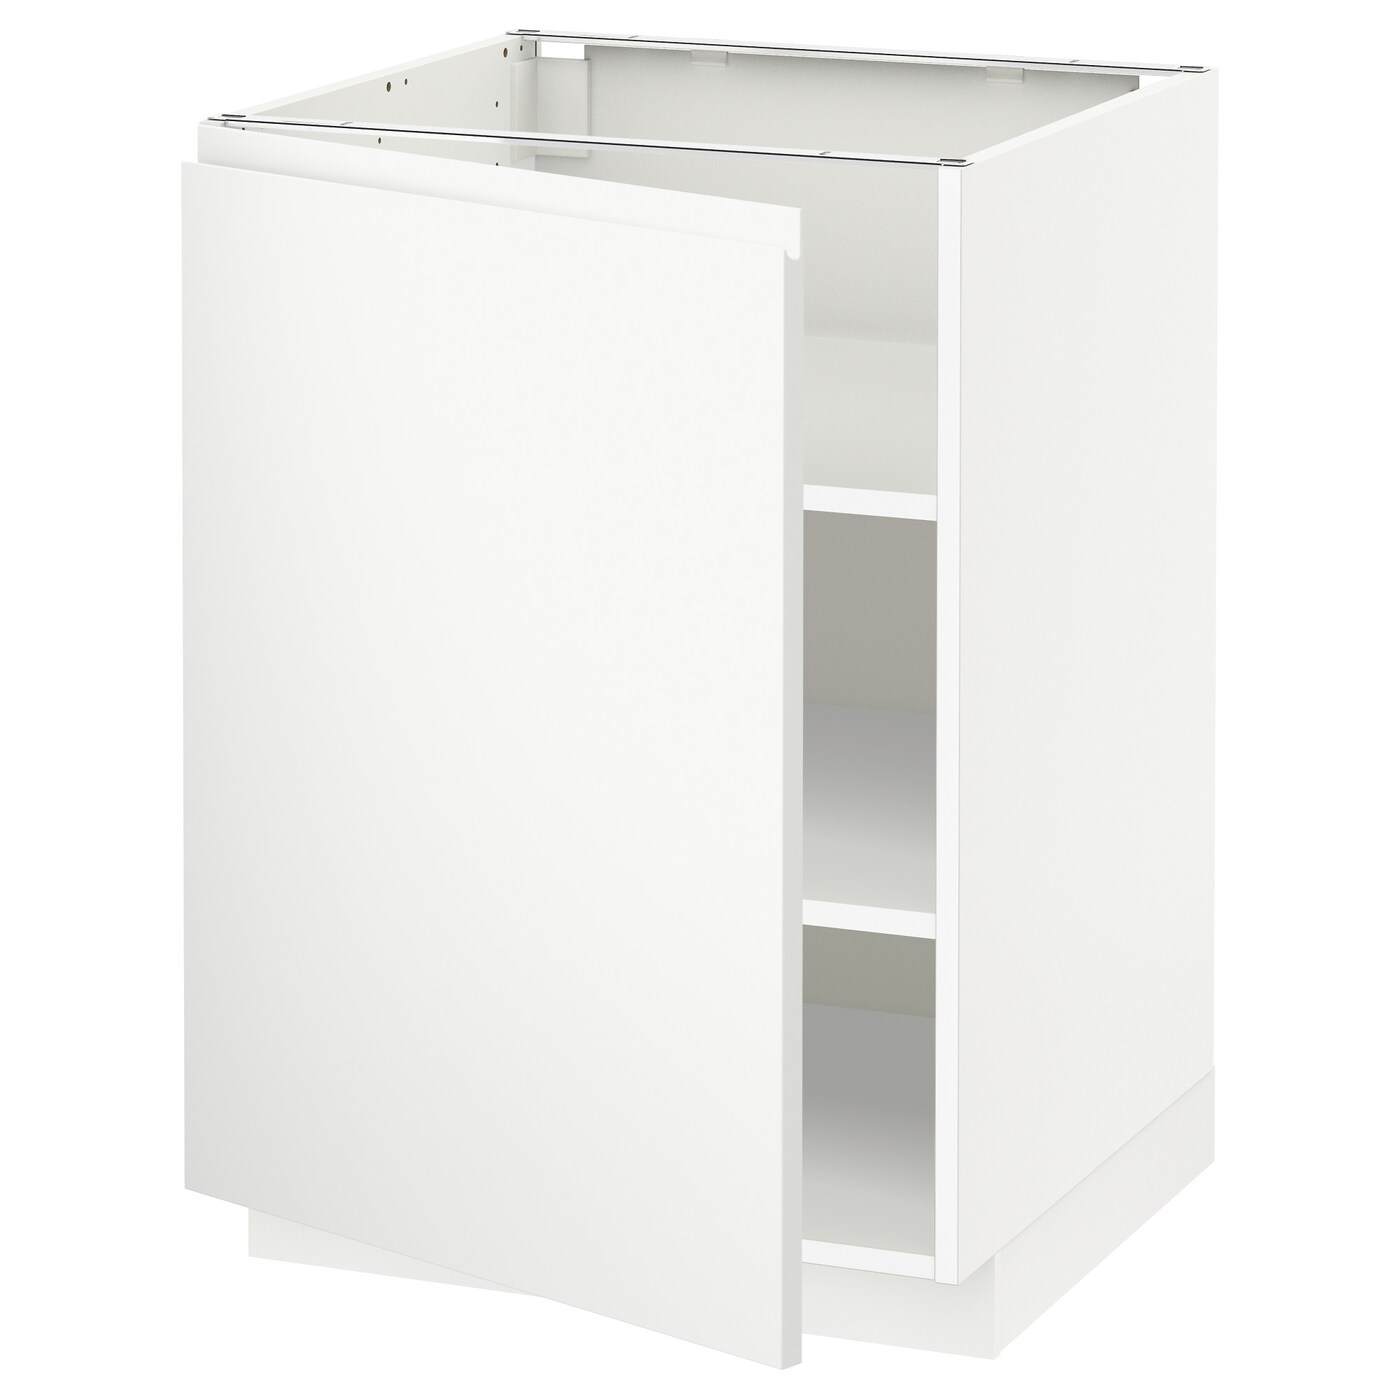 Напольный кухонный шкаф  - IKEA METOD, 88x62x60см, белый, МЕТОД ИКЕА